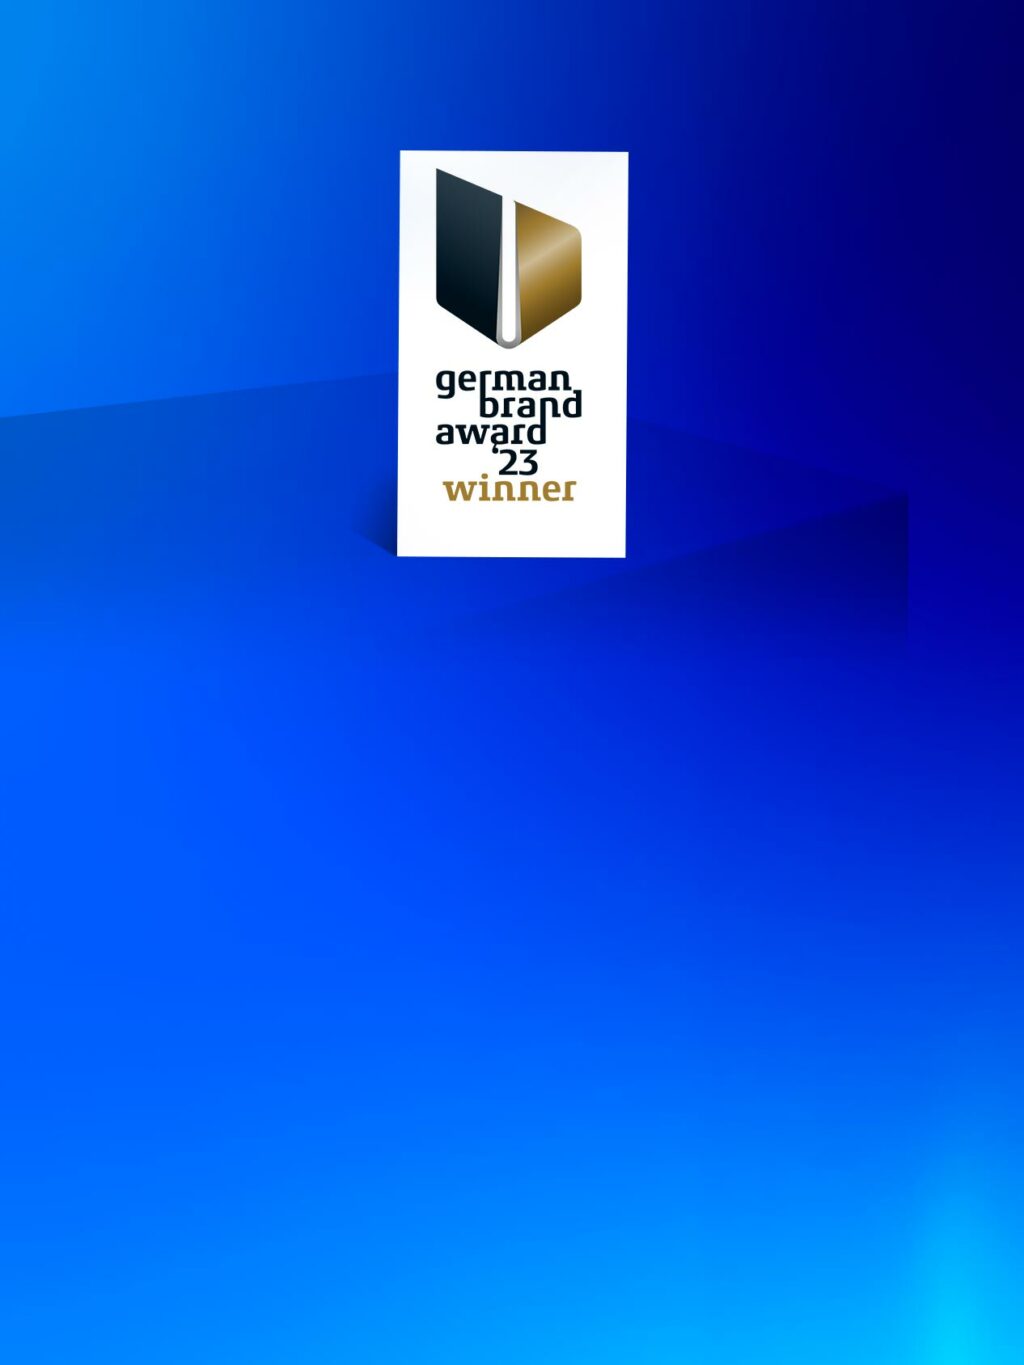 atreus_teaser startseite mobile 20230614 GBA award winner 1